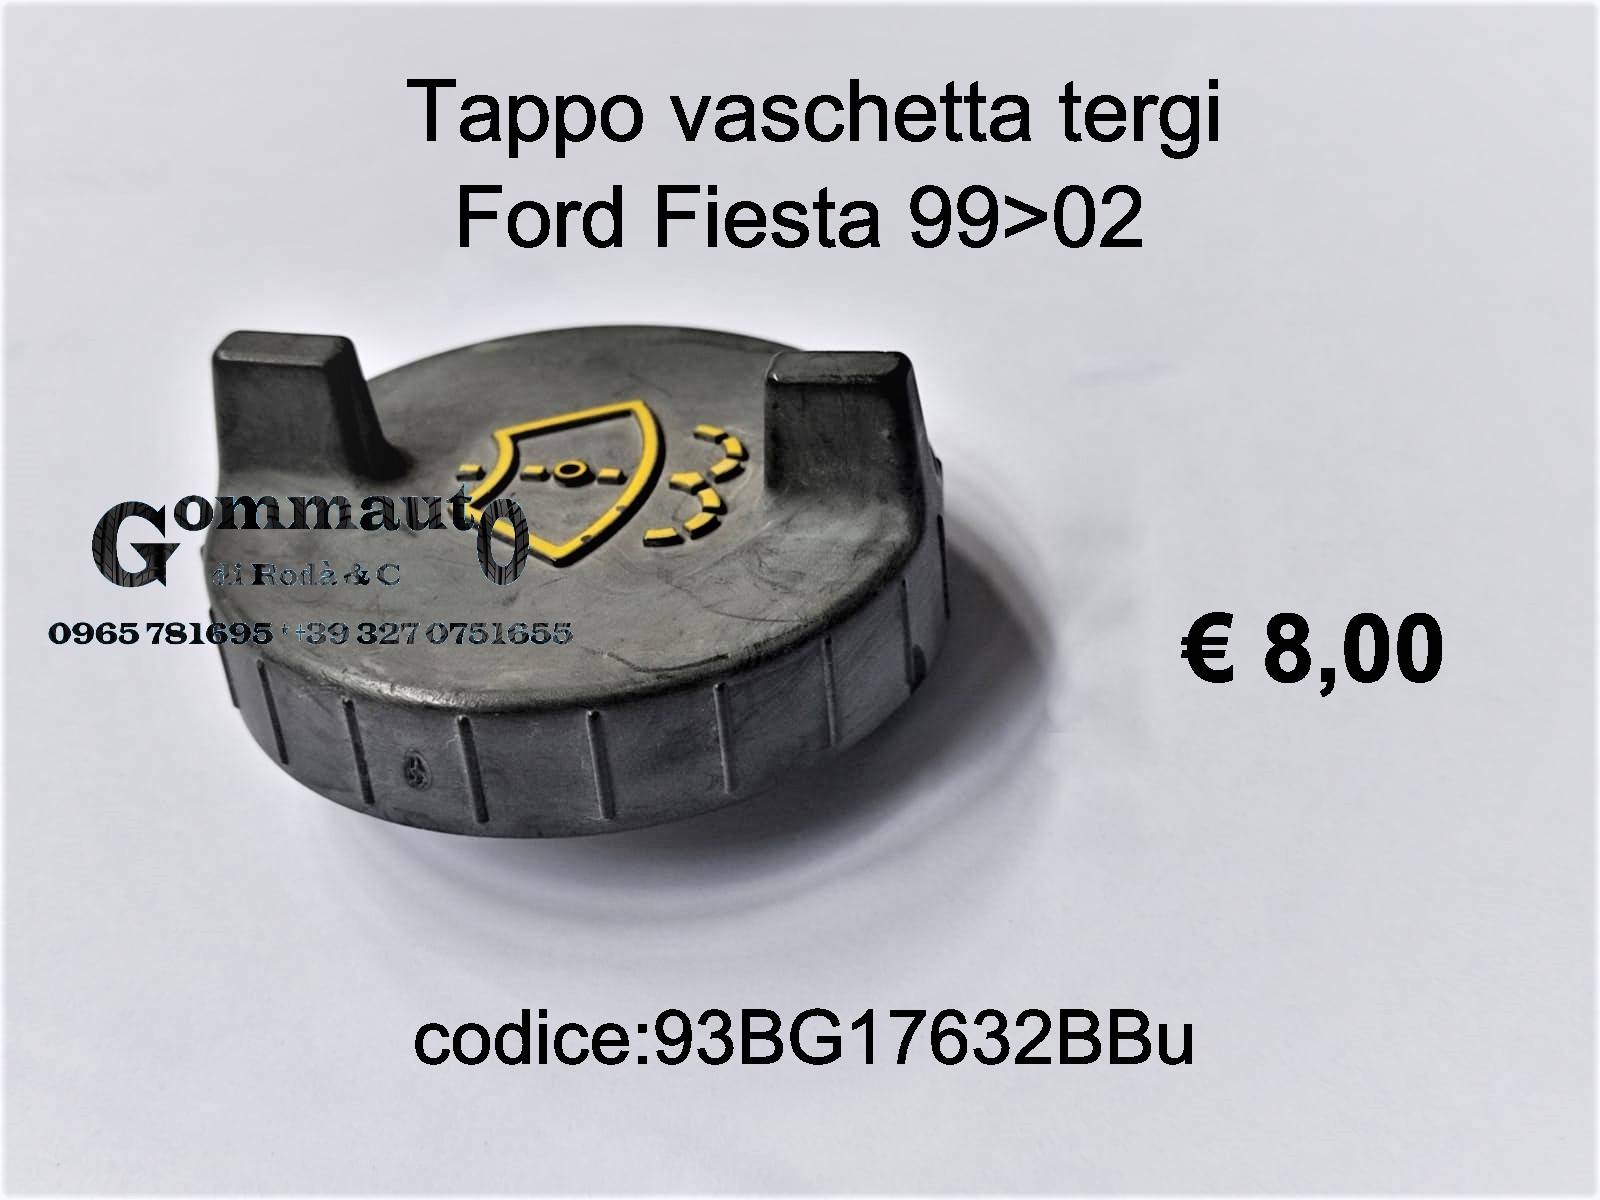 Tappo vaschetta tergi Ford Fiesta 99>02